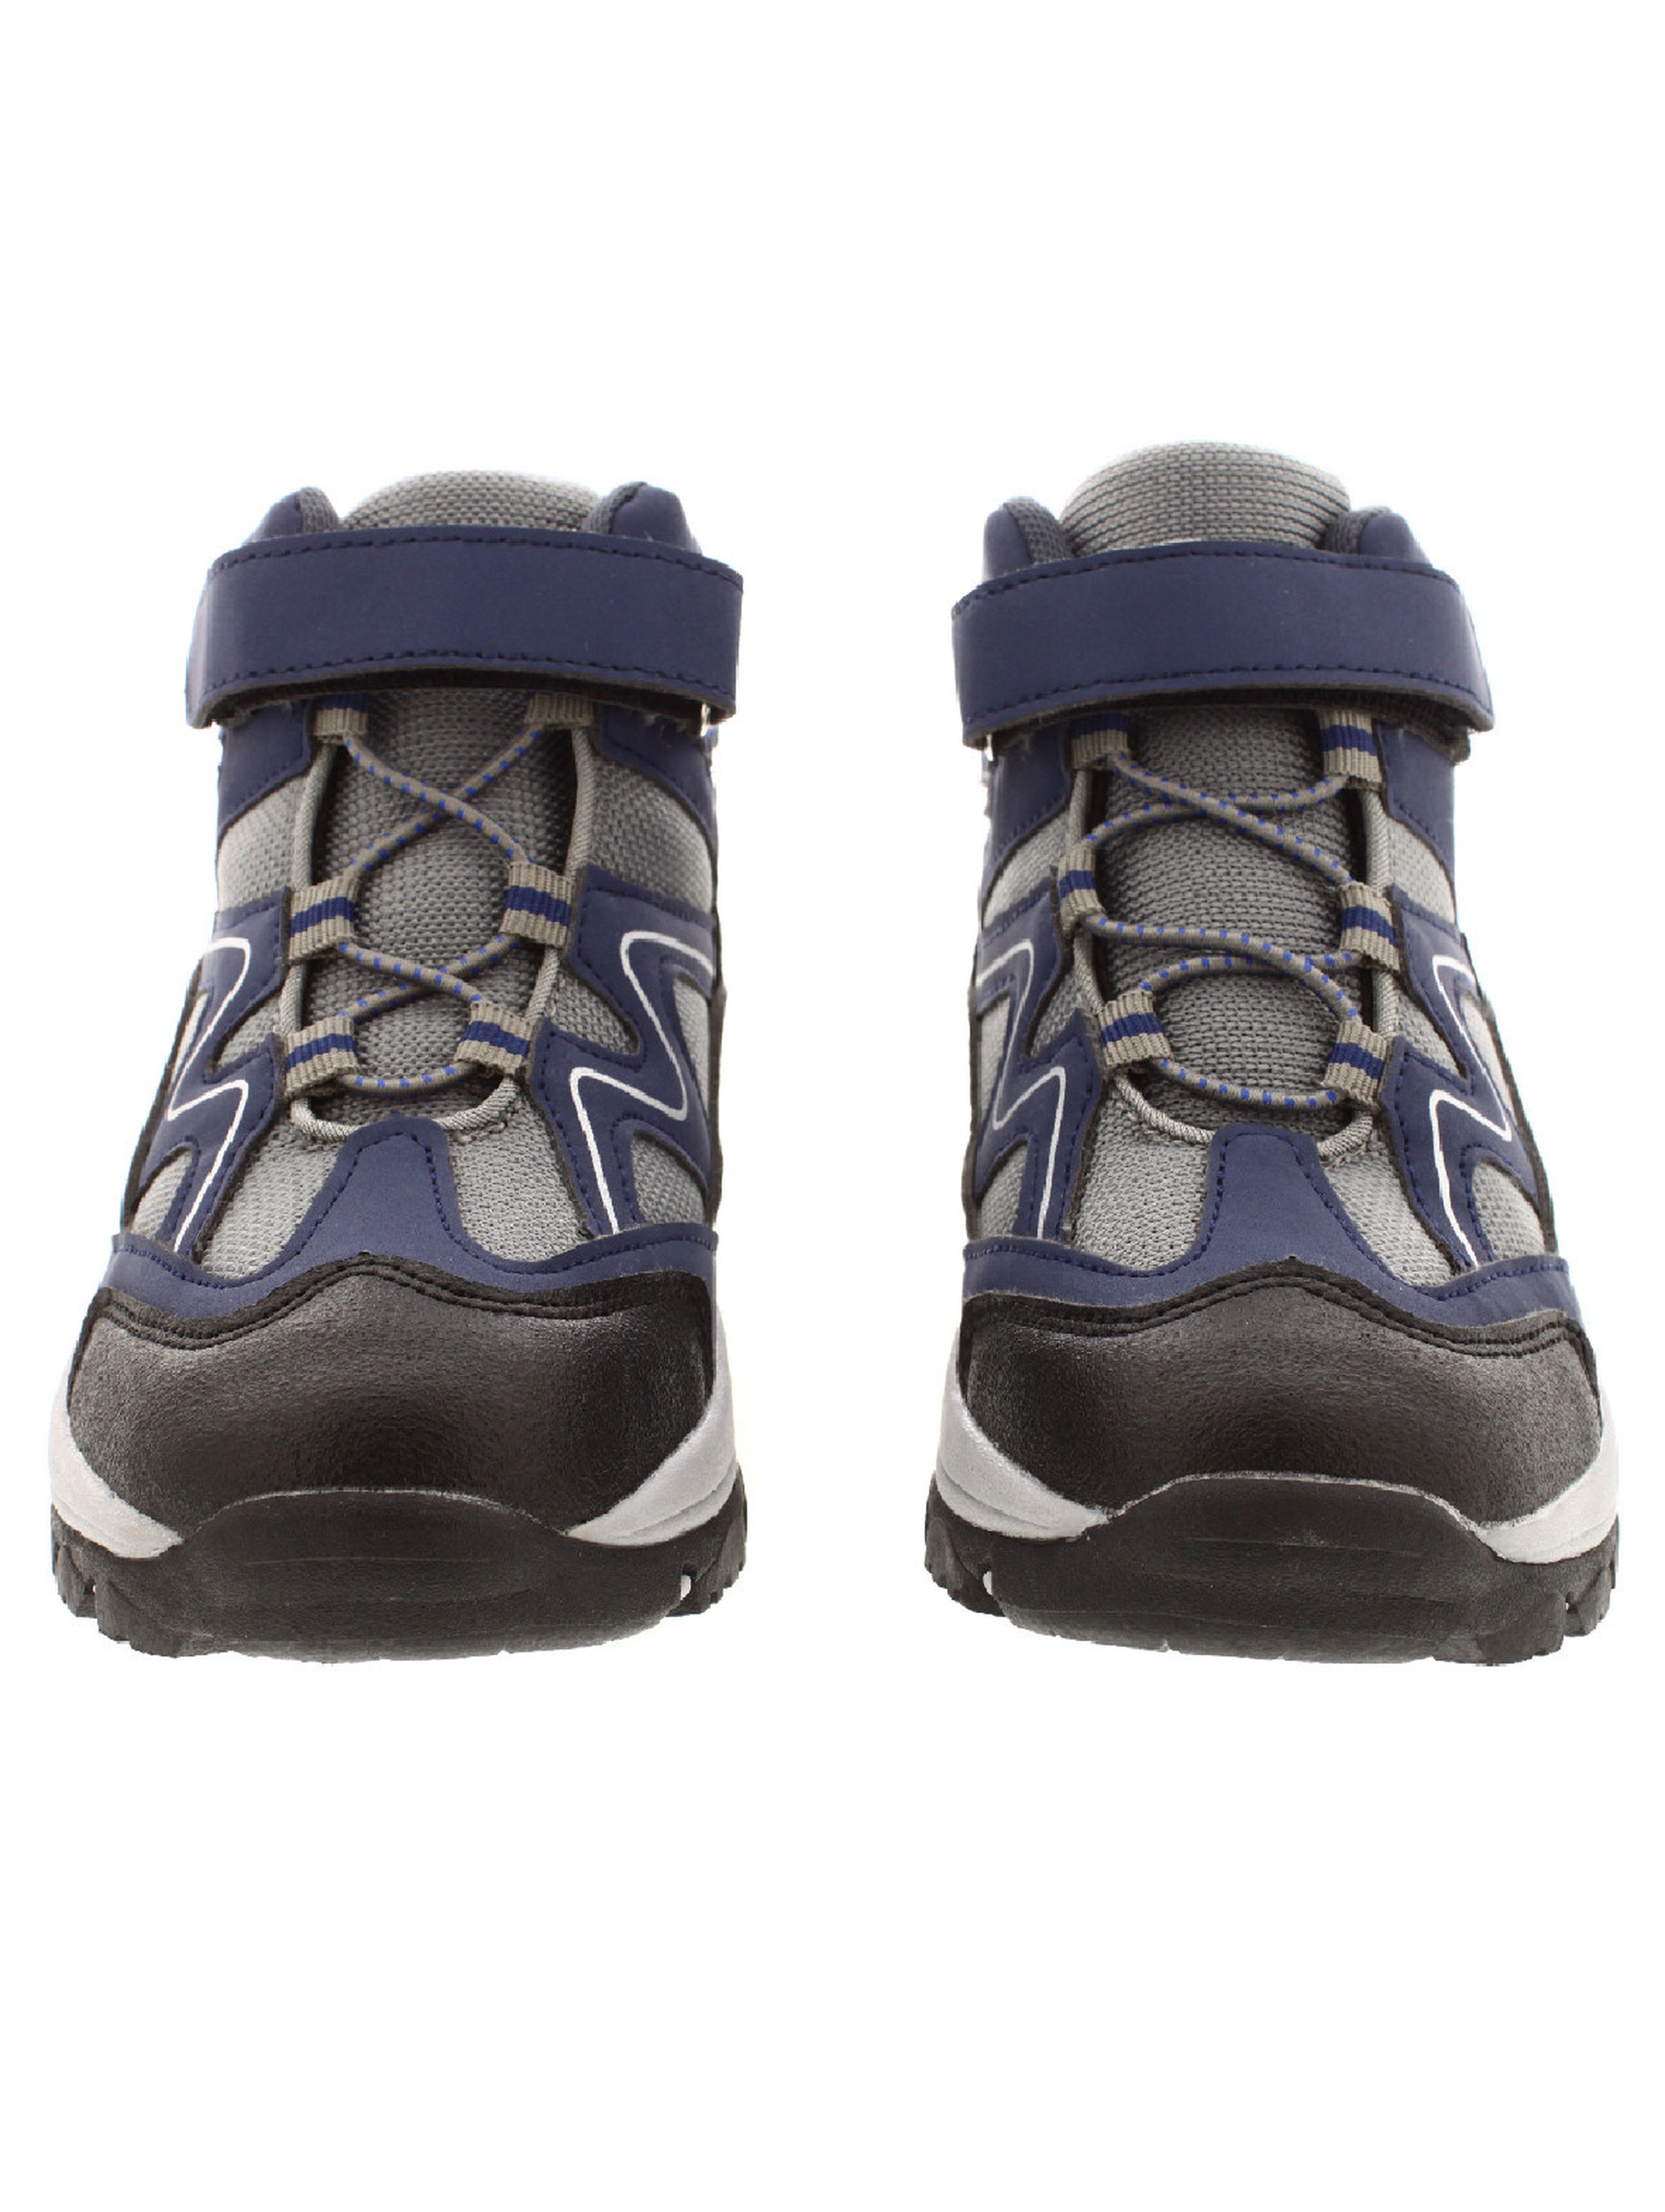 Granatowe buty trekkingowe dla chłopca na rzep